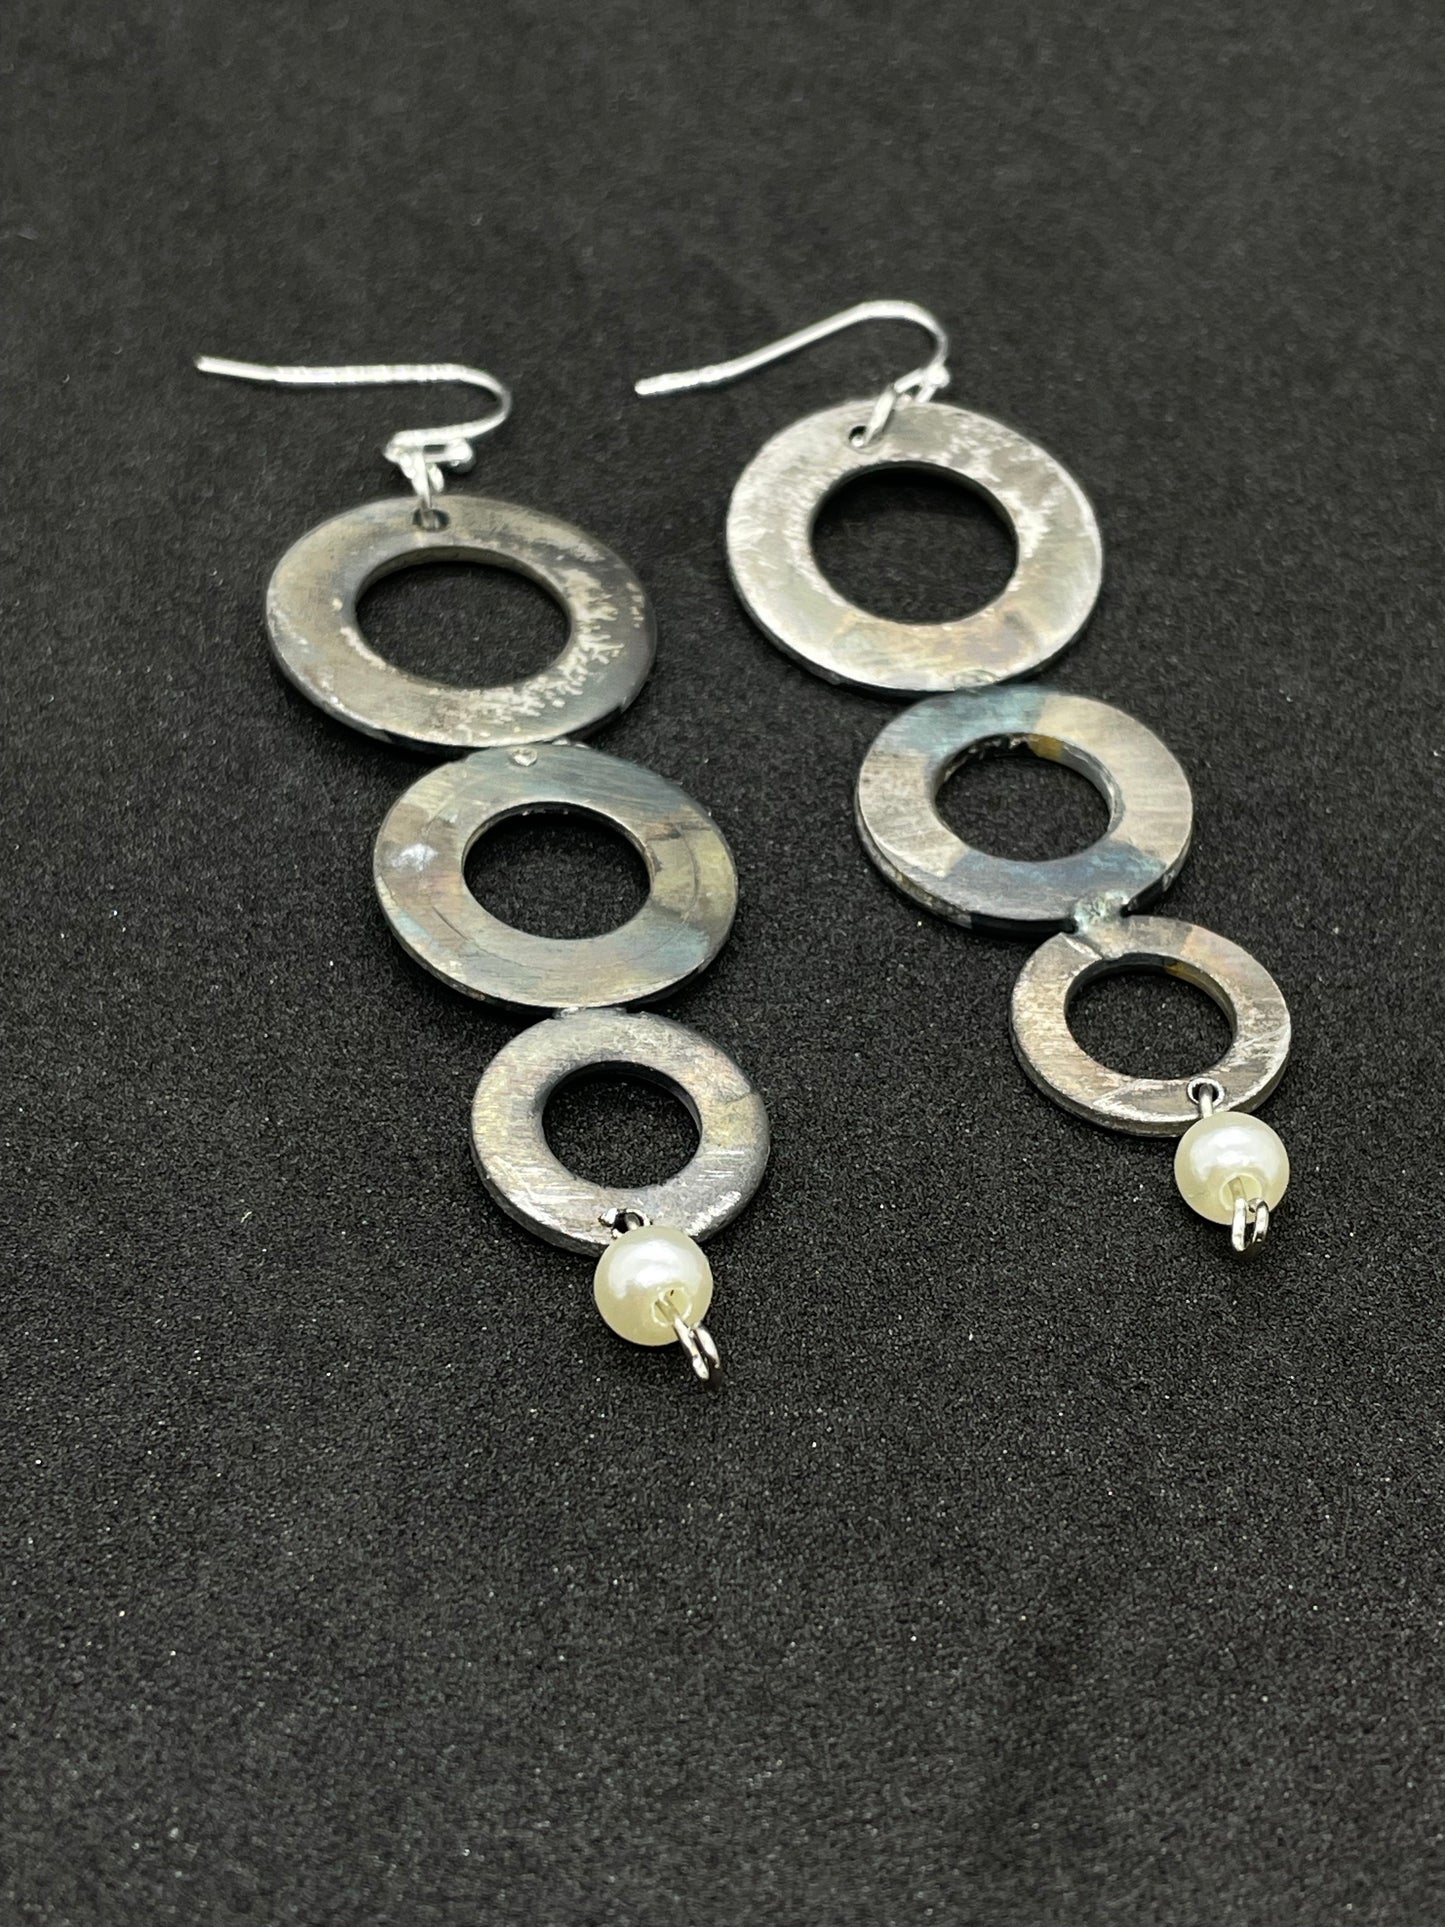 3 steel rings earrings with pearl